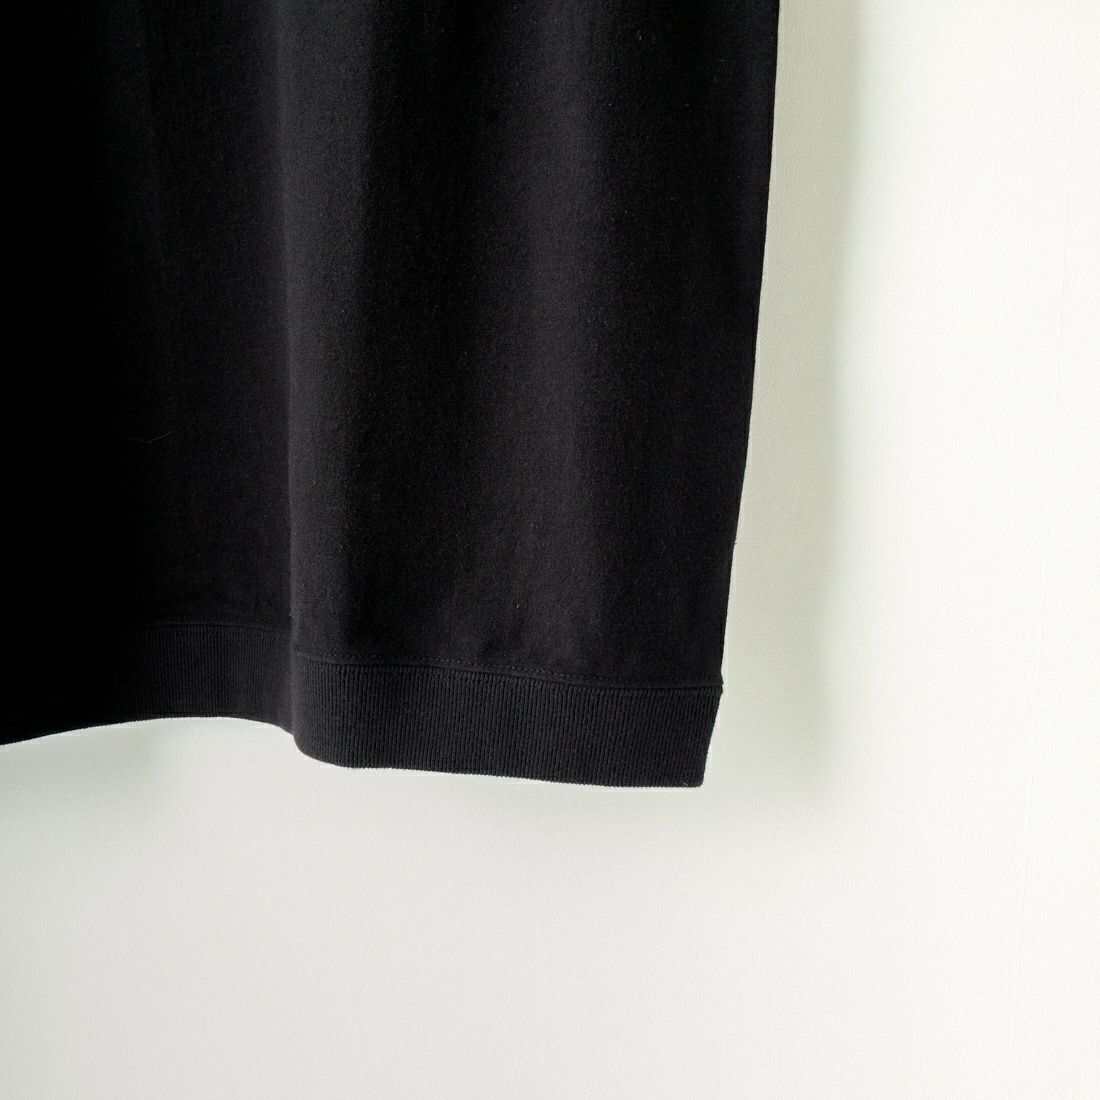 THE NORTH FACE PURPLE LABEL [ザ ノースフェイス パープルレーベル] ハイバルギーポケットTシャツ [NT3323N] K BLACK